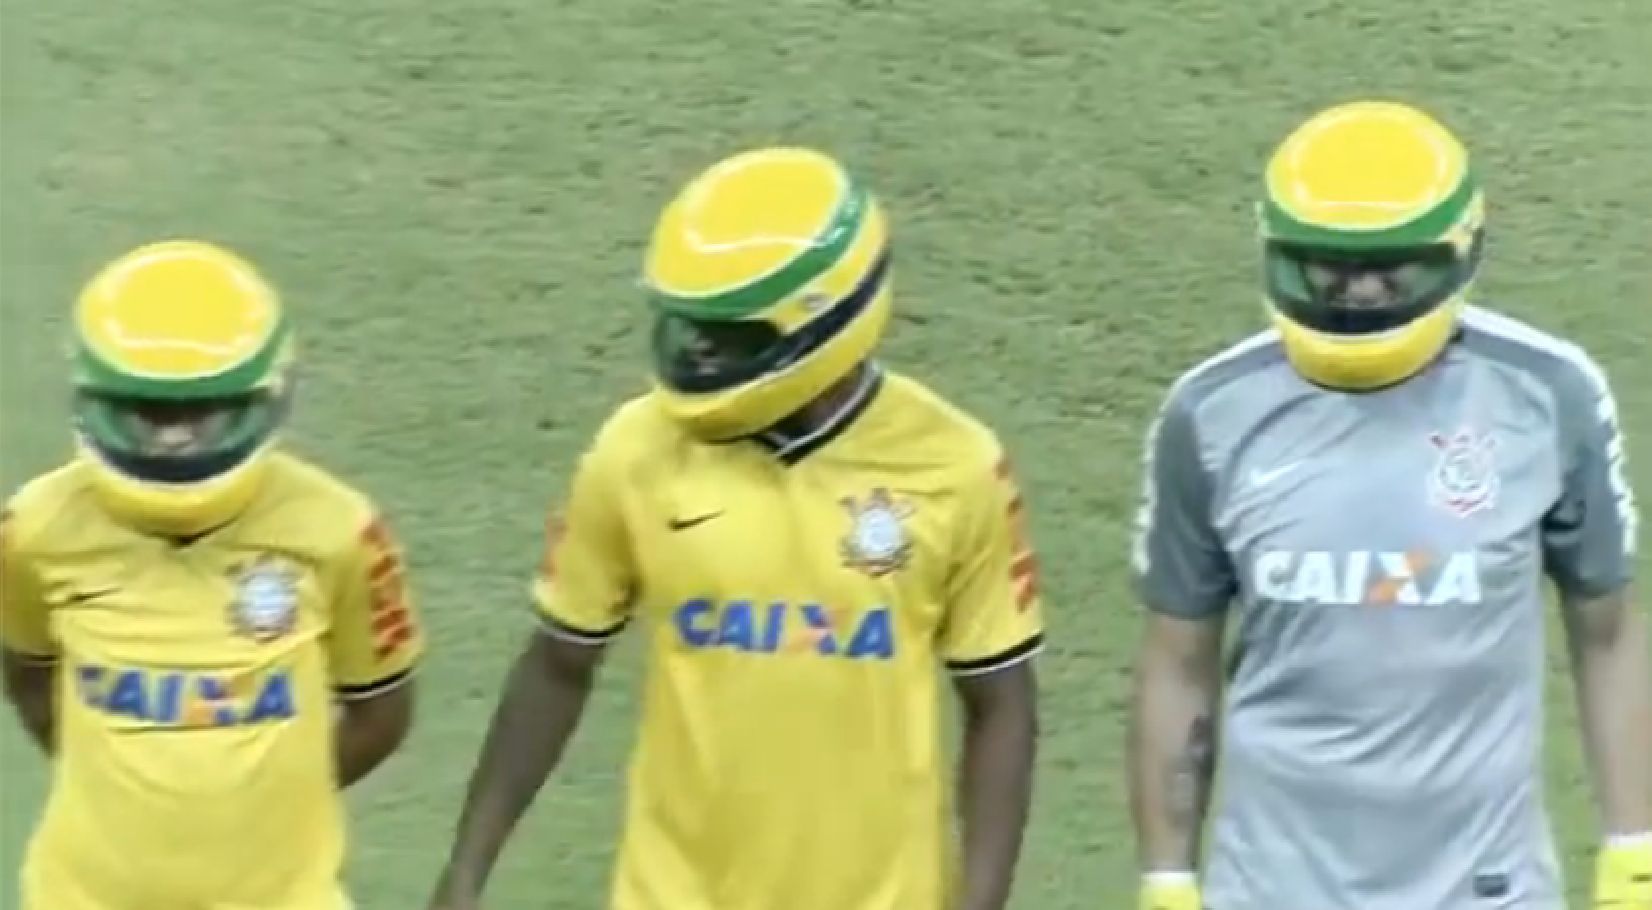 Tous les joueurs du club des Corinthians sont entrés sur la pelouse avec un casque aux couleurs du Brésil sous le bras. Et ils l'ont enfilé avant de saluer le public.